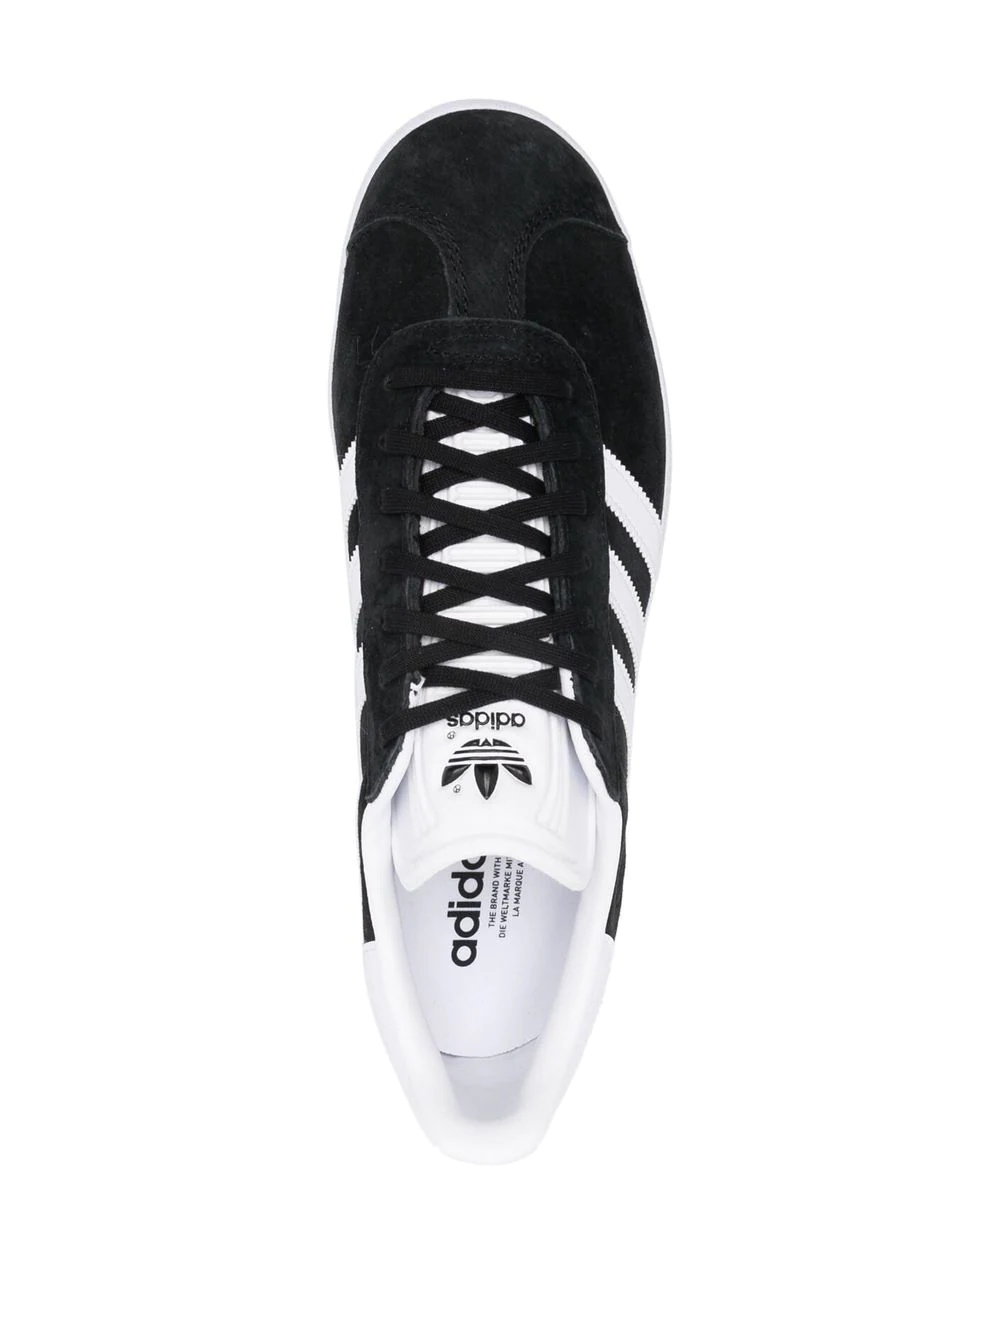 Adidas Originals Gazelle sneakers - 8